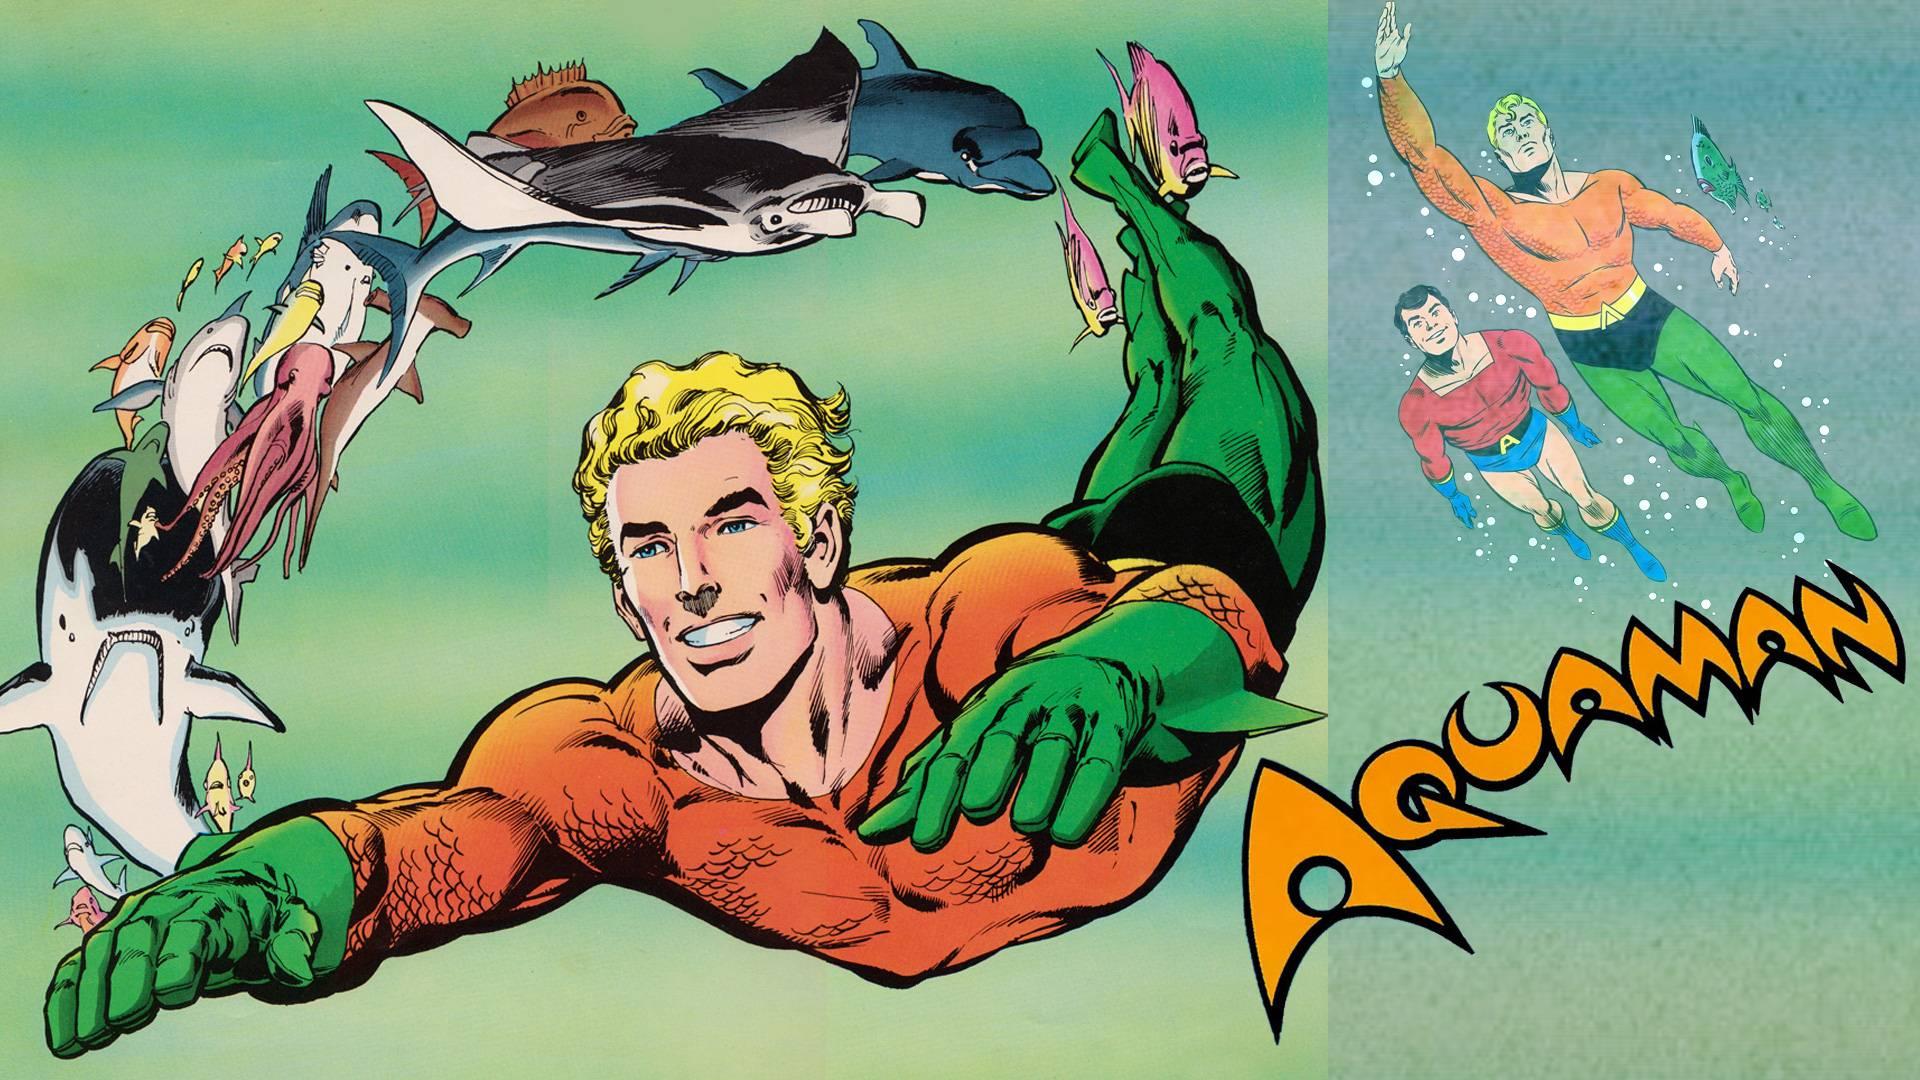 Aquaman (1968)